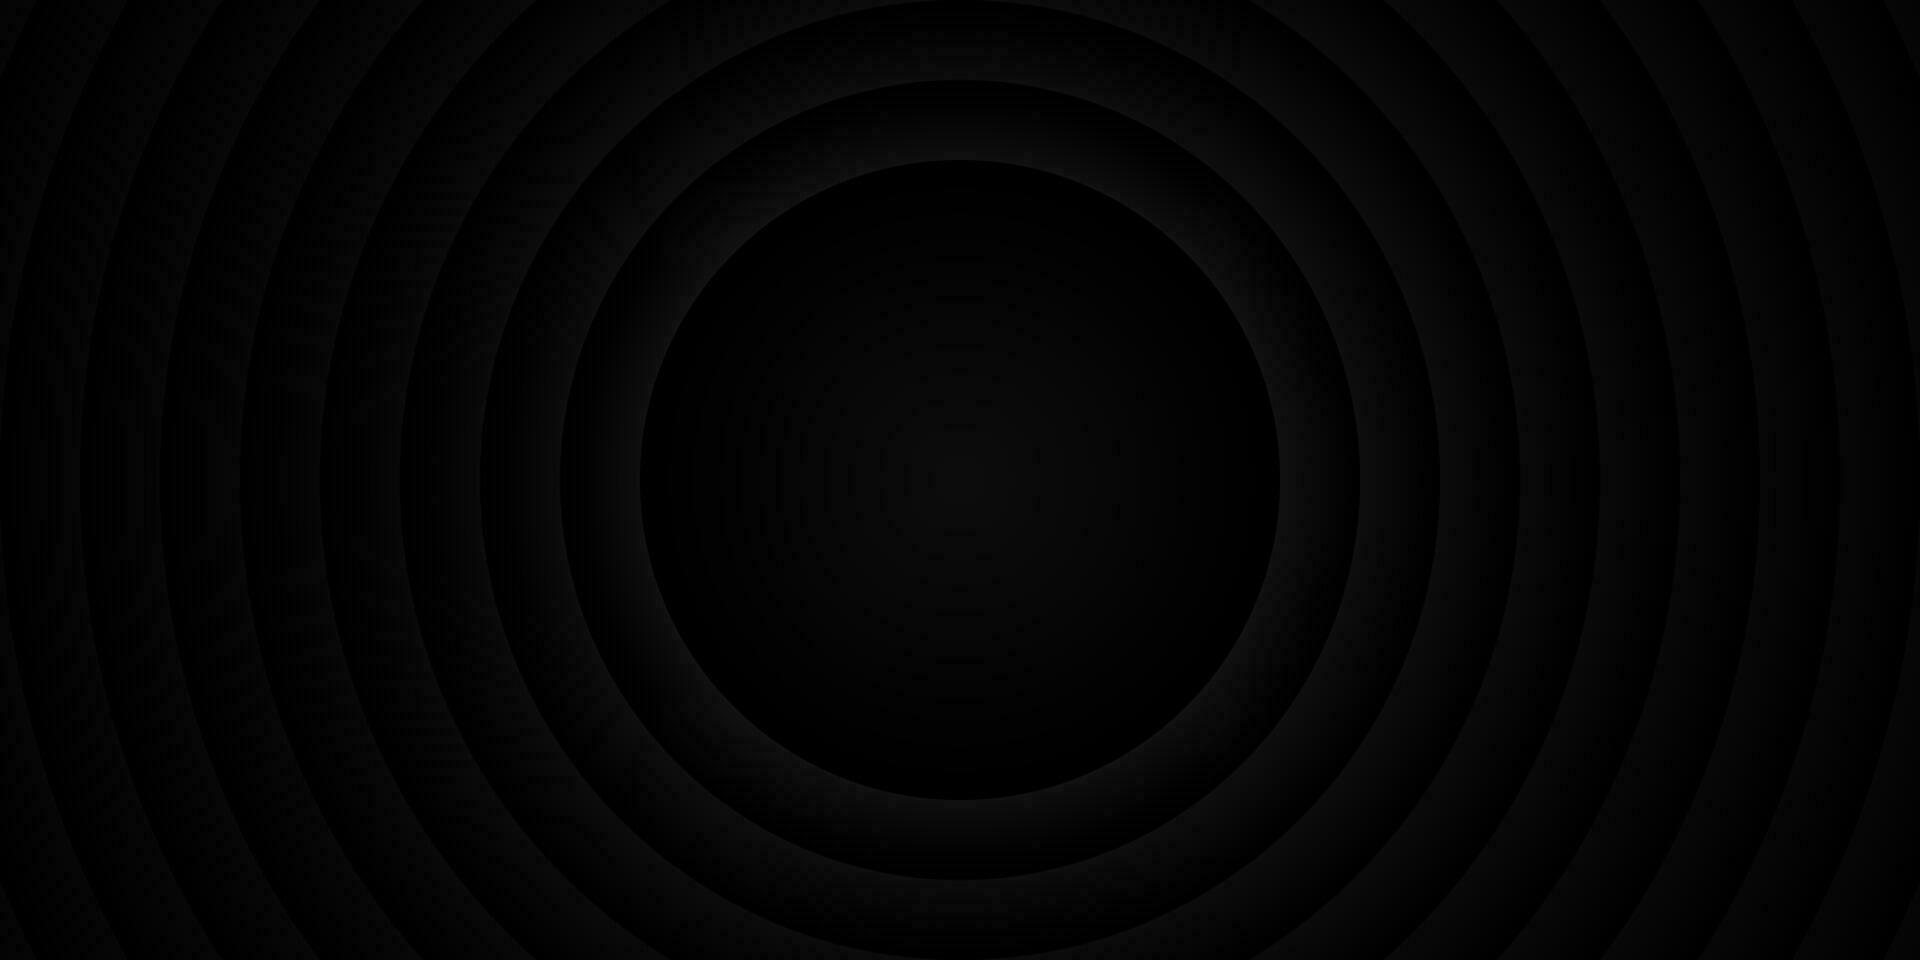 abstract zwart en wit ronde achtergrond met concentrisch cirkels. vector illustratie